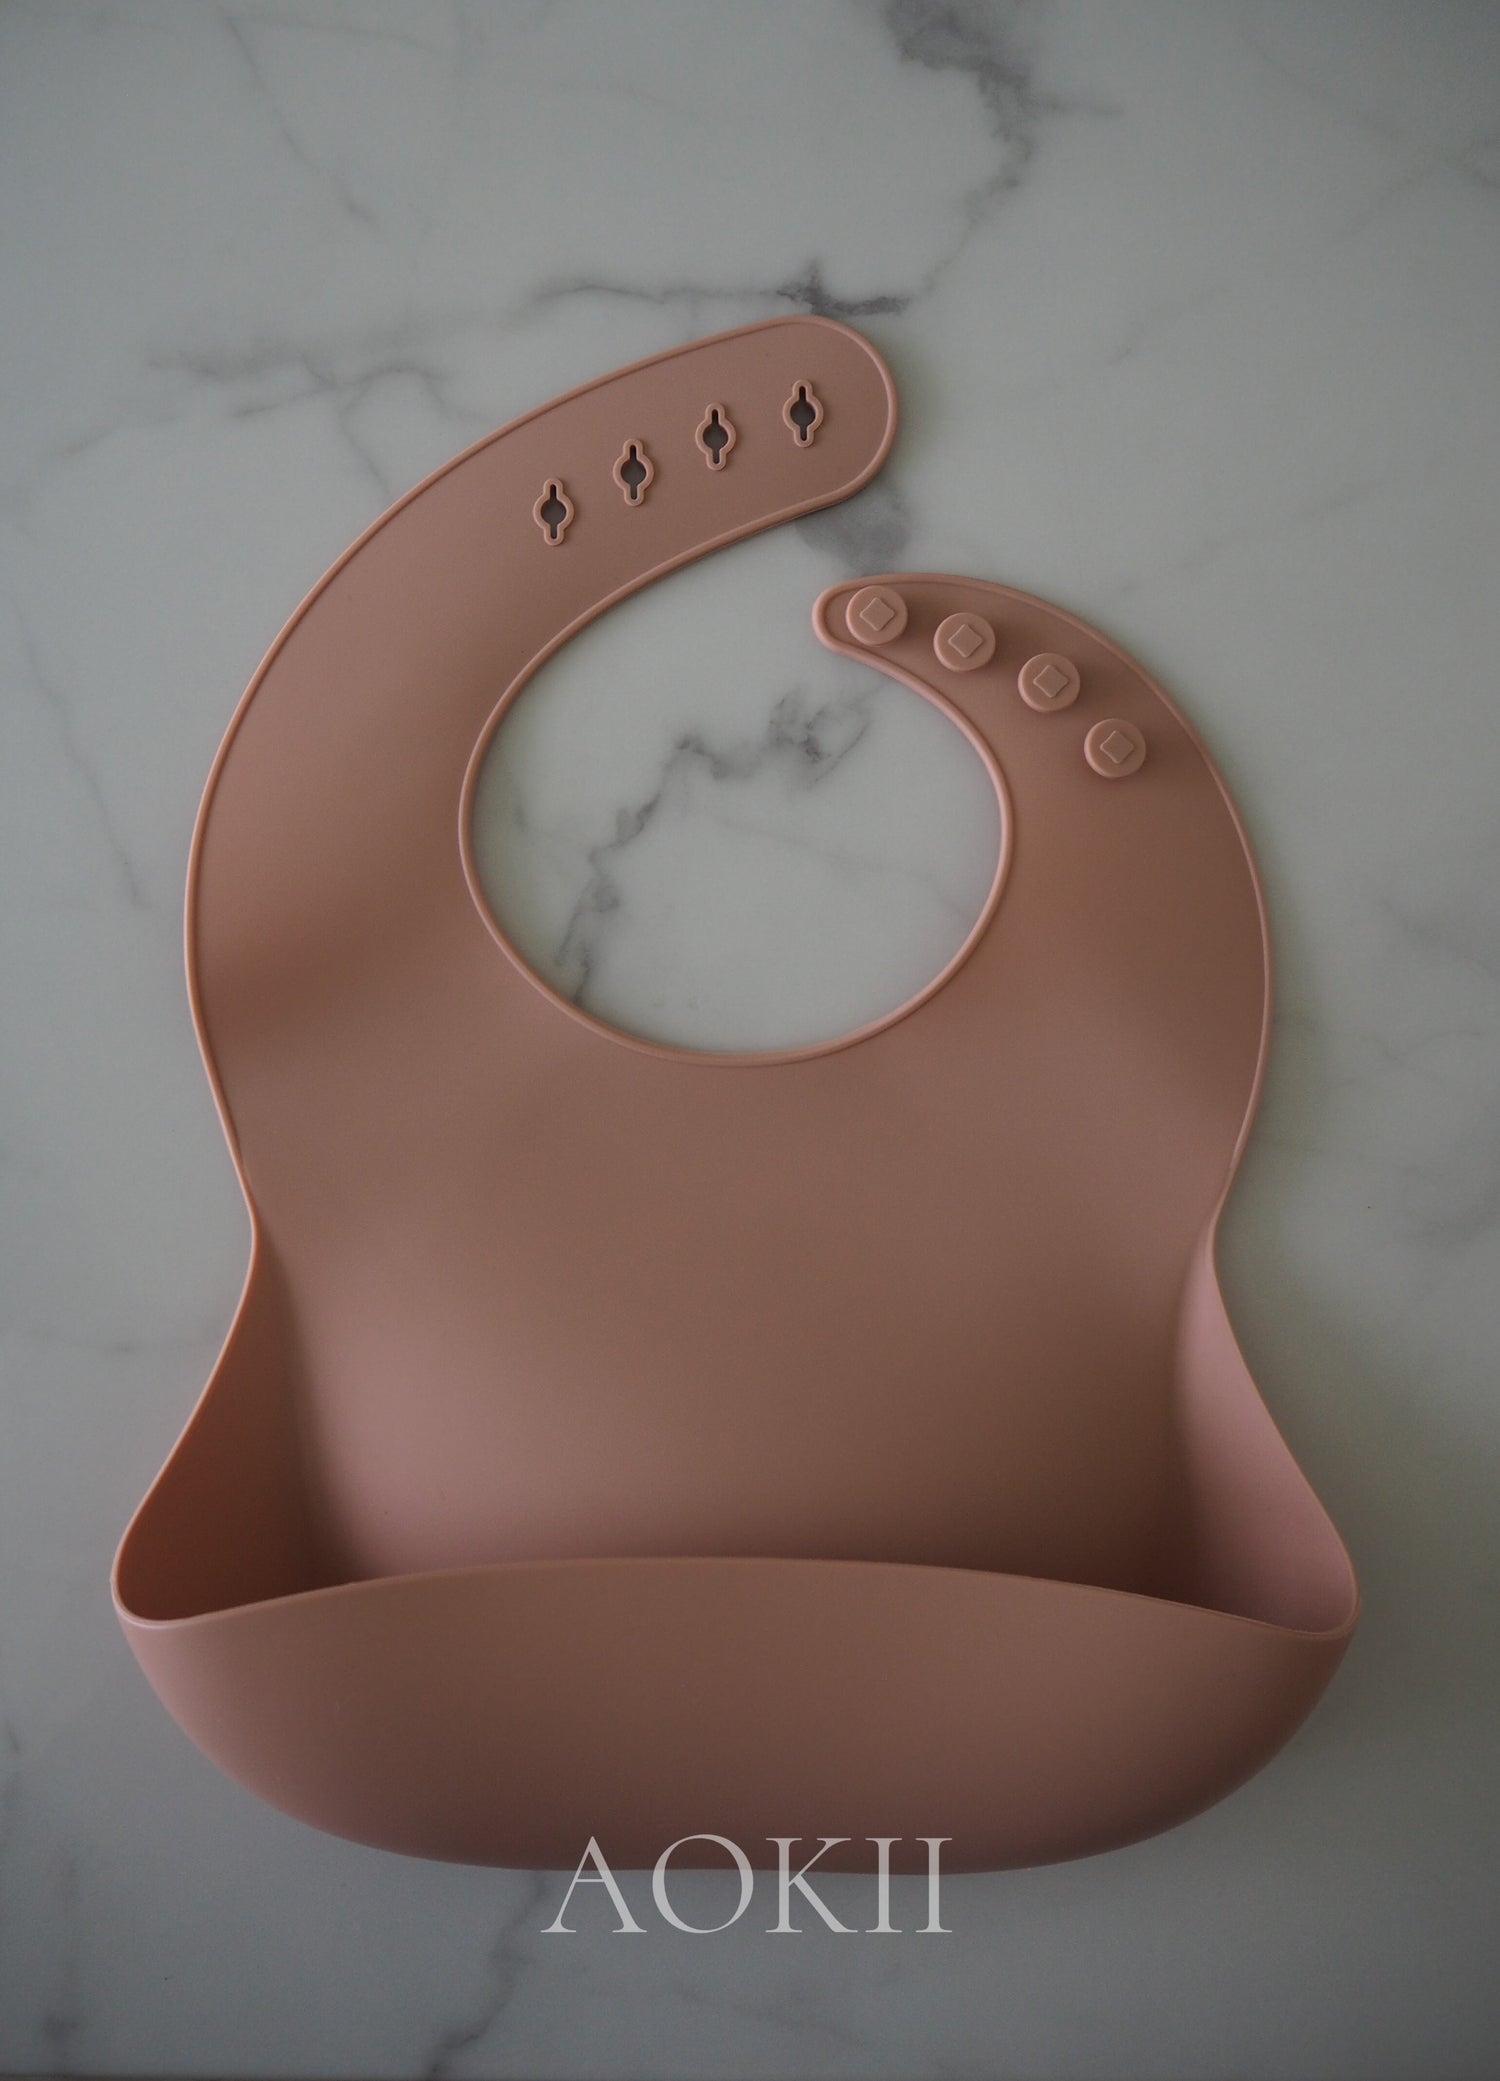 Food-grade silicone baby feeding bib, BPA-free and PVC-free